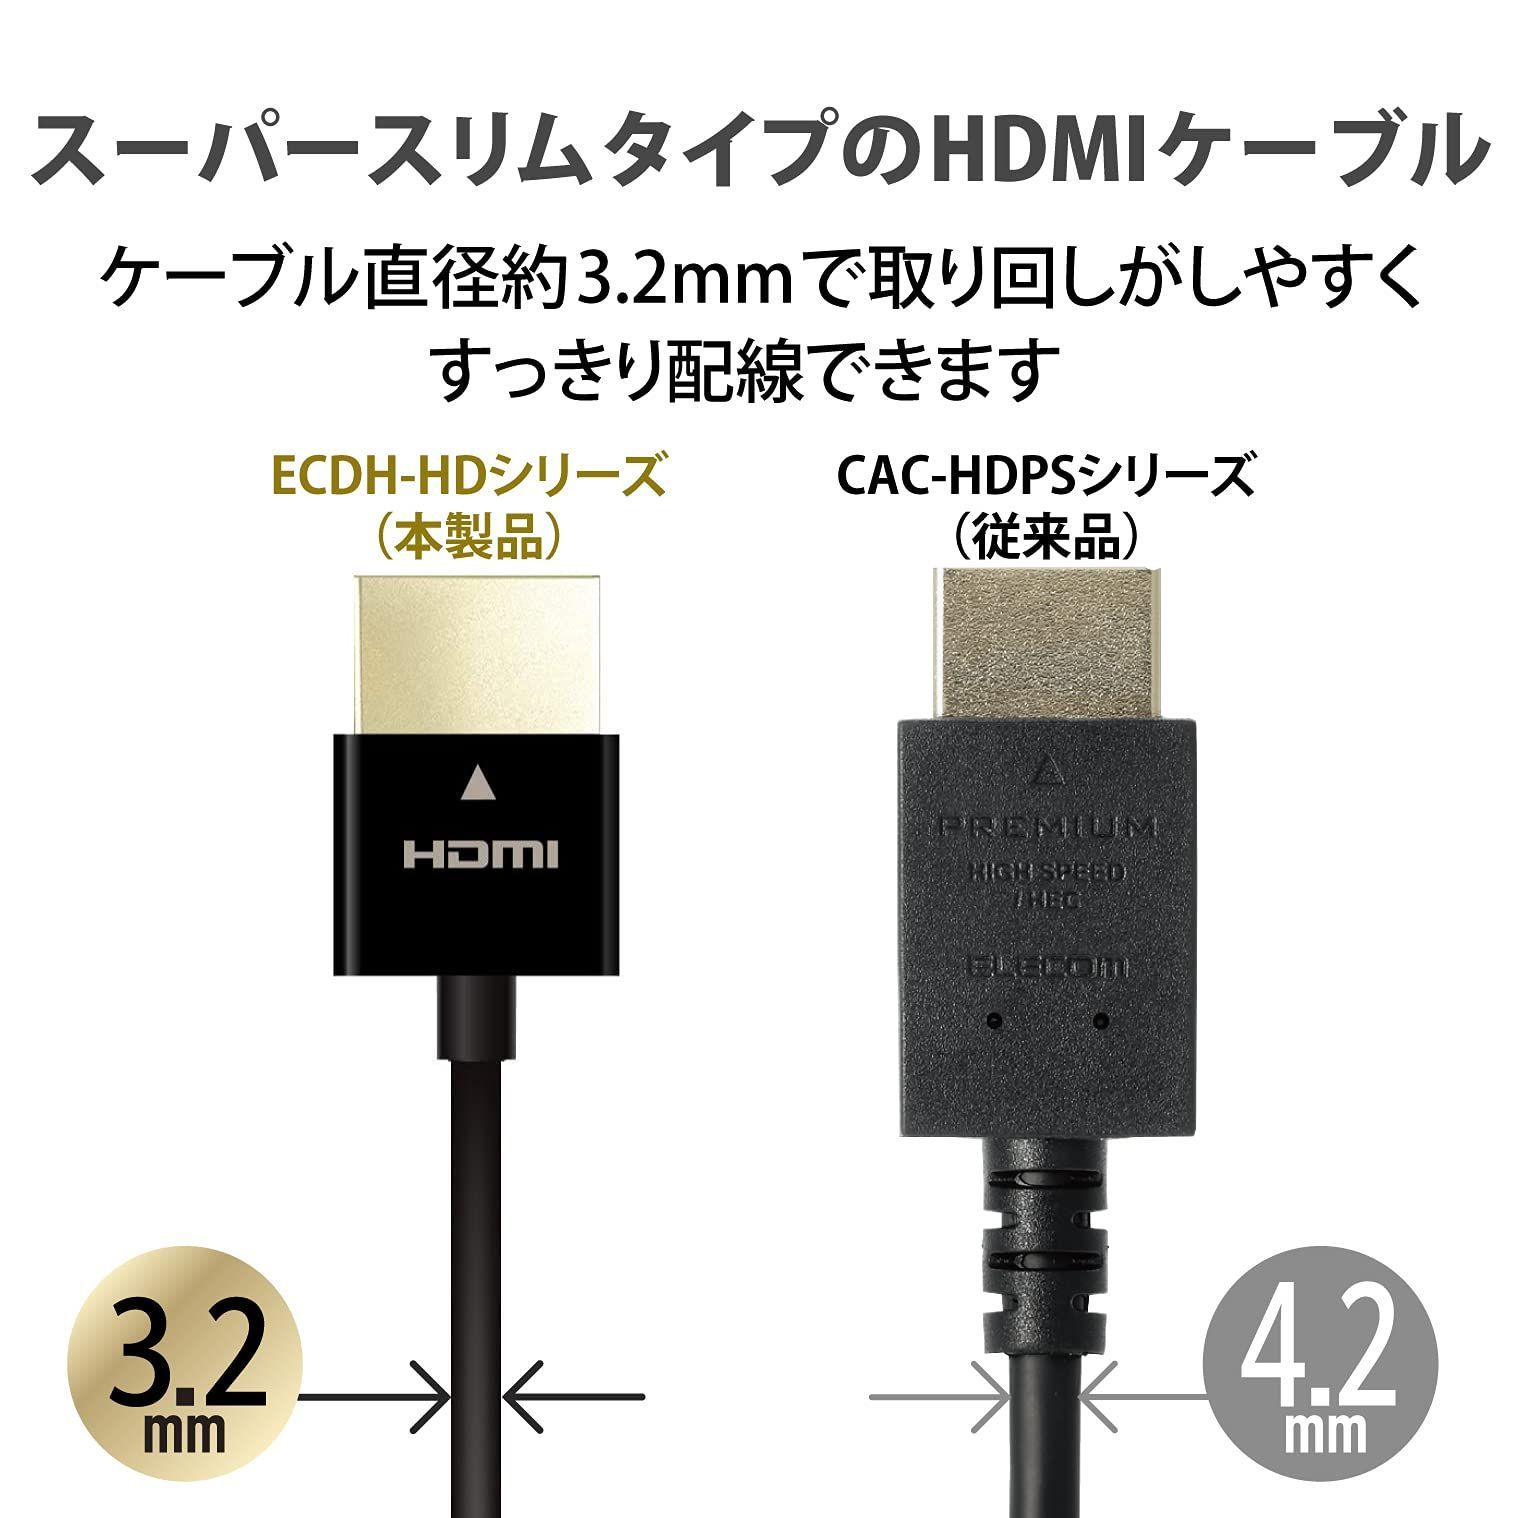 パナソニック HDMIケーブル 50cm × 2本 評価 - 映像用ケーブル